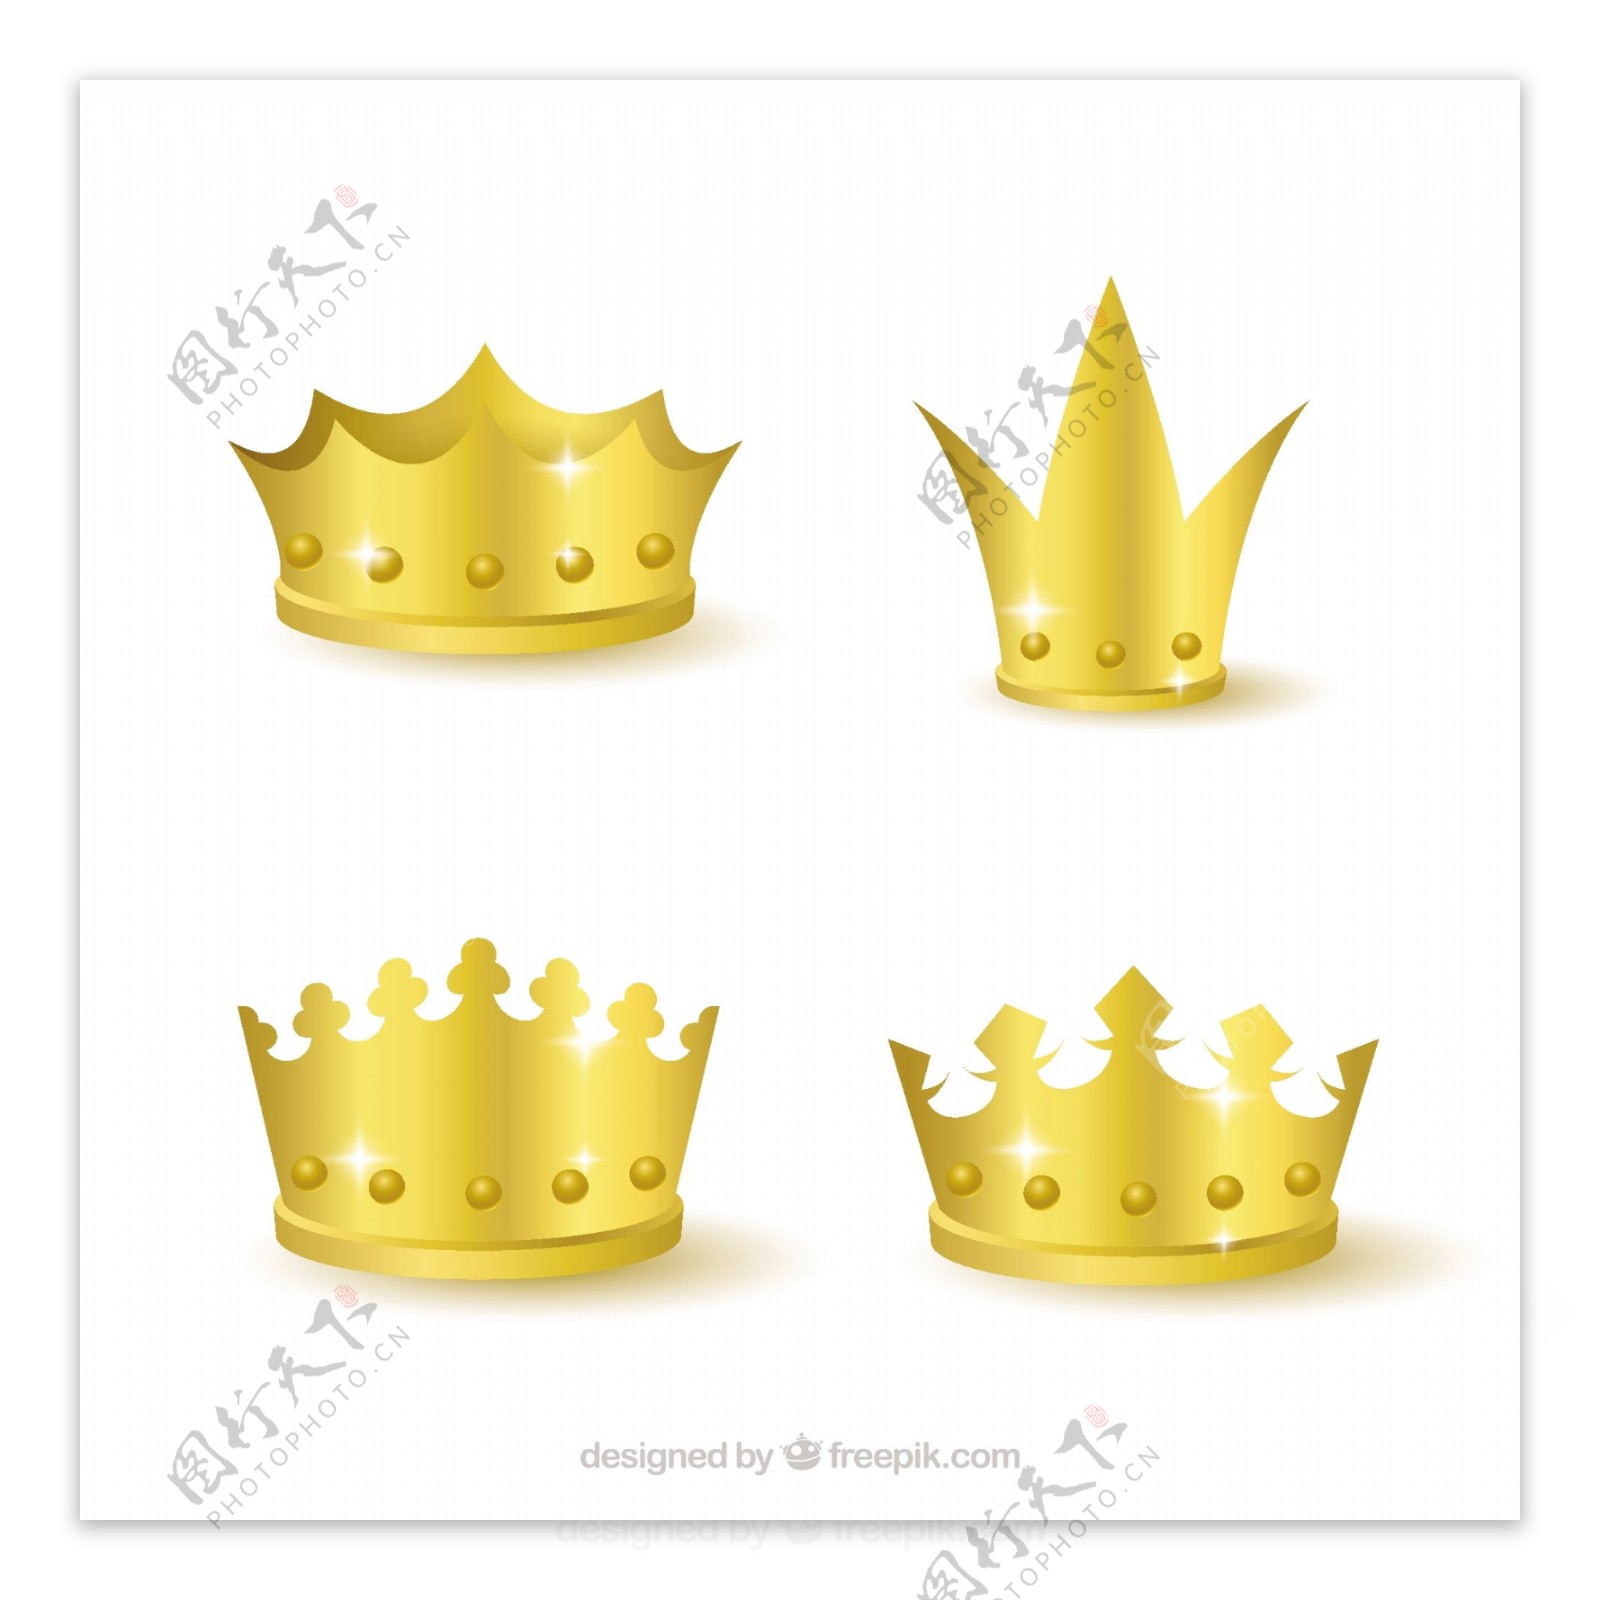 四个写实风格的金色皇冠矢量设计素材